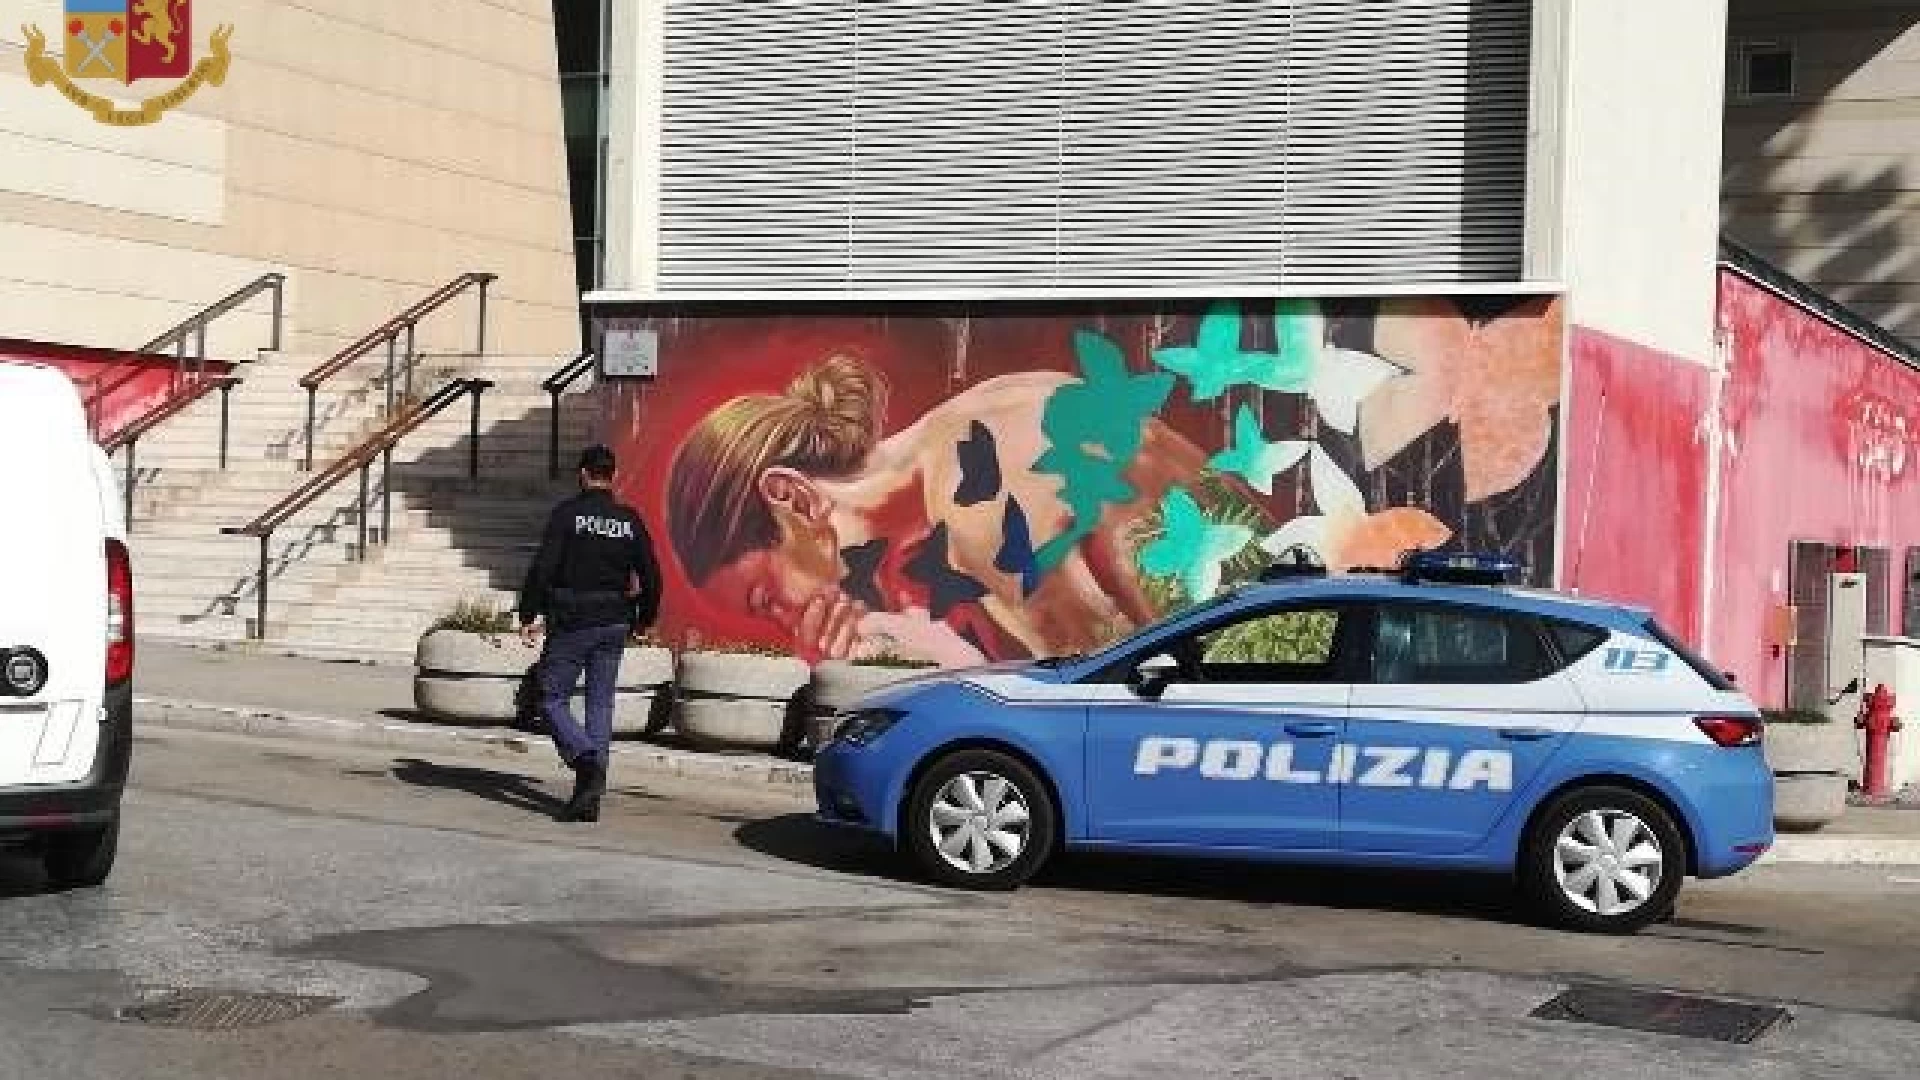 Isernia: danneggiamento al murales dell’Auditorium Unita’ d’Italia, 25enne denunciato per guida sotto l’influenza dell’alcol.